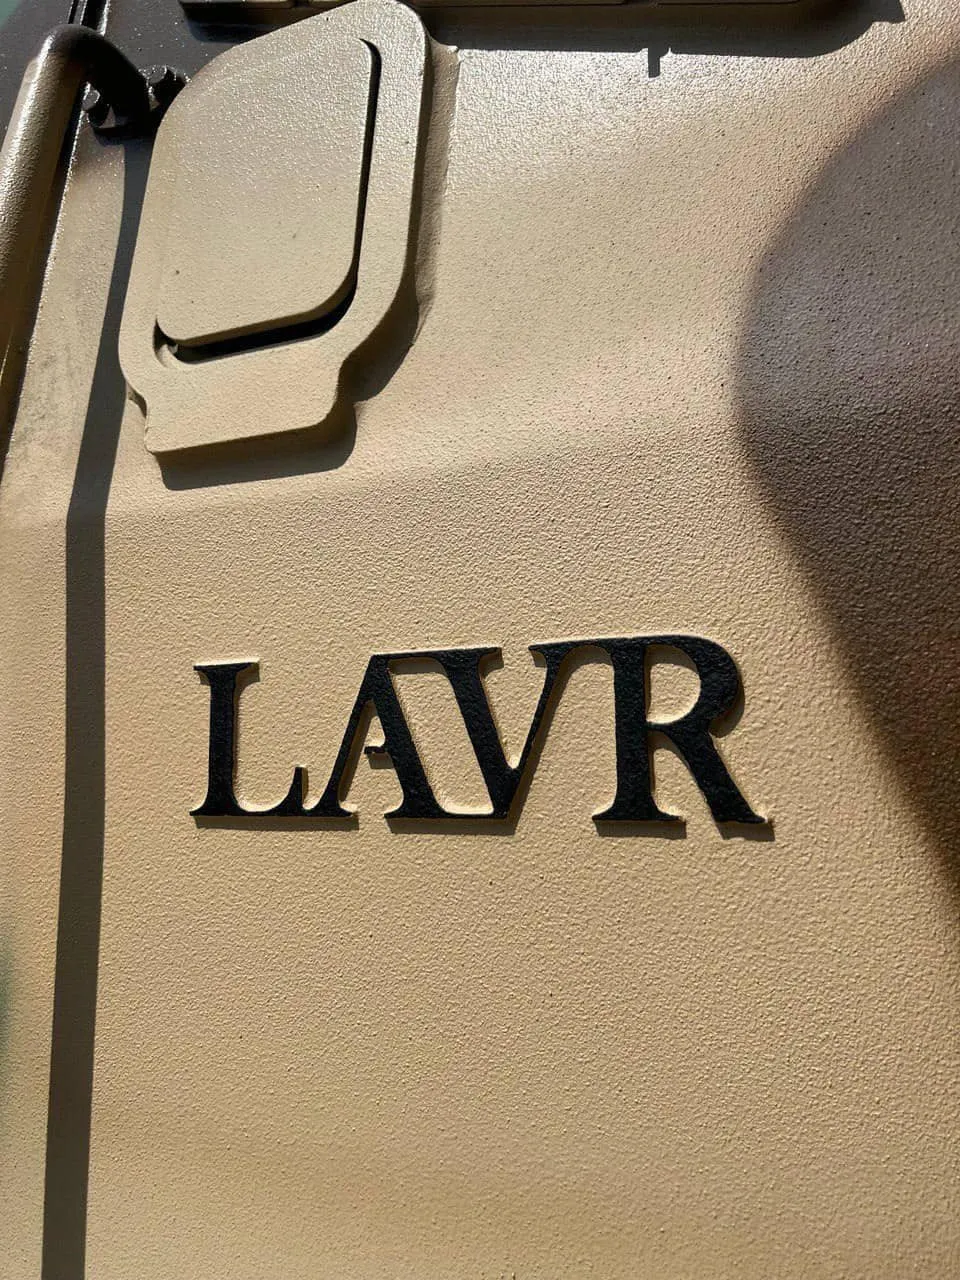 Закулисье по производству бронеавтомобилей LAVR для Украины, которые хорошо себя показали на фронте